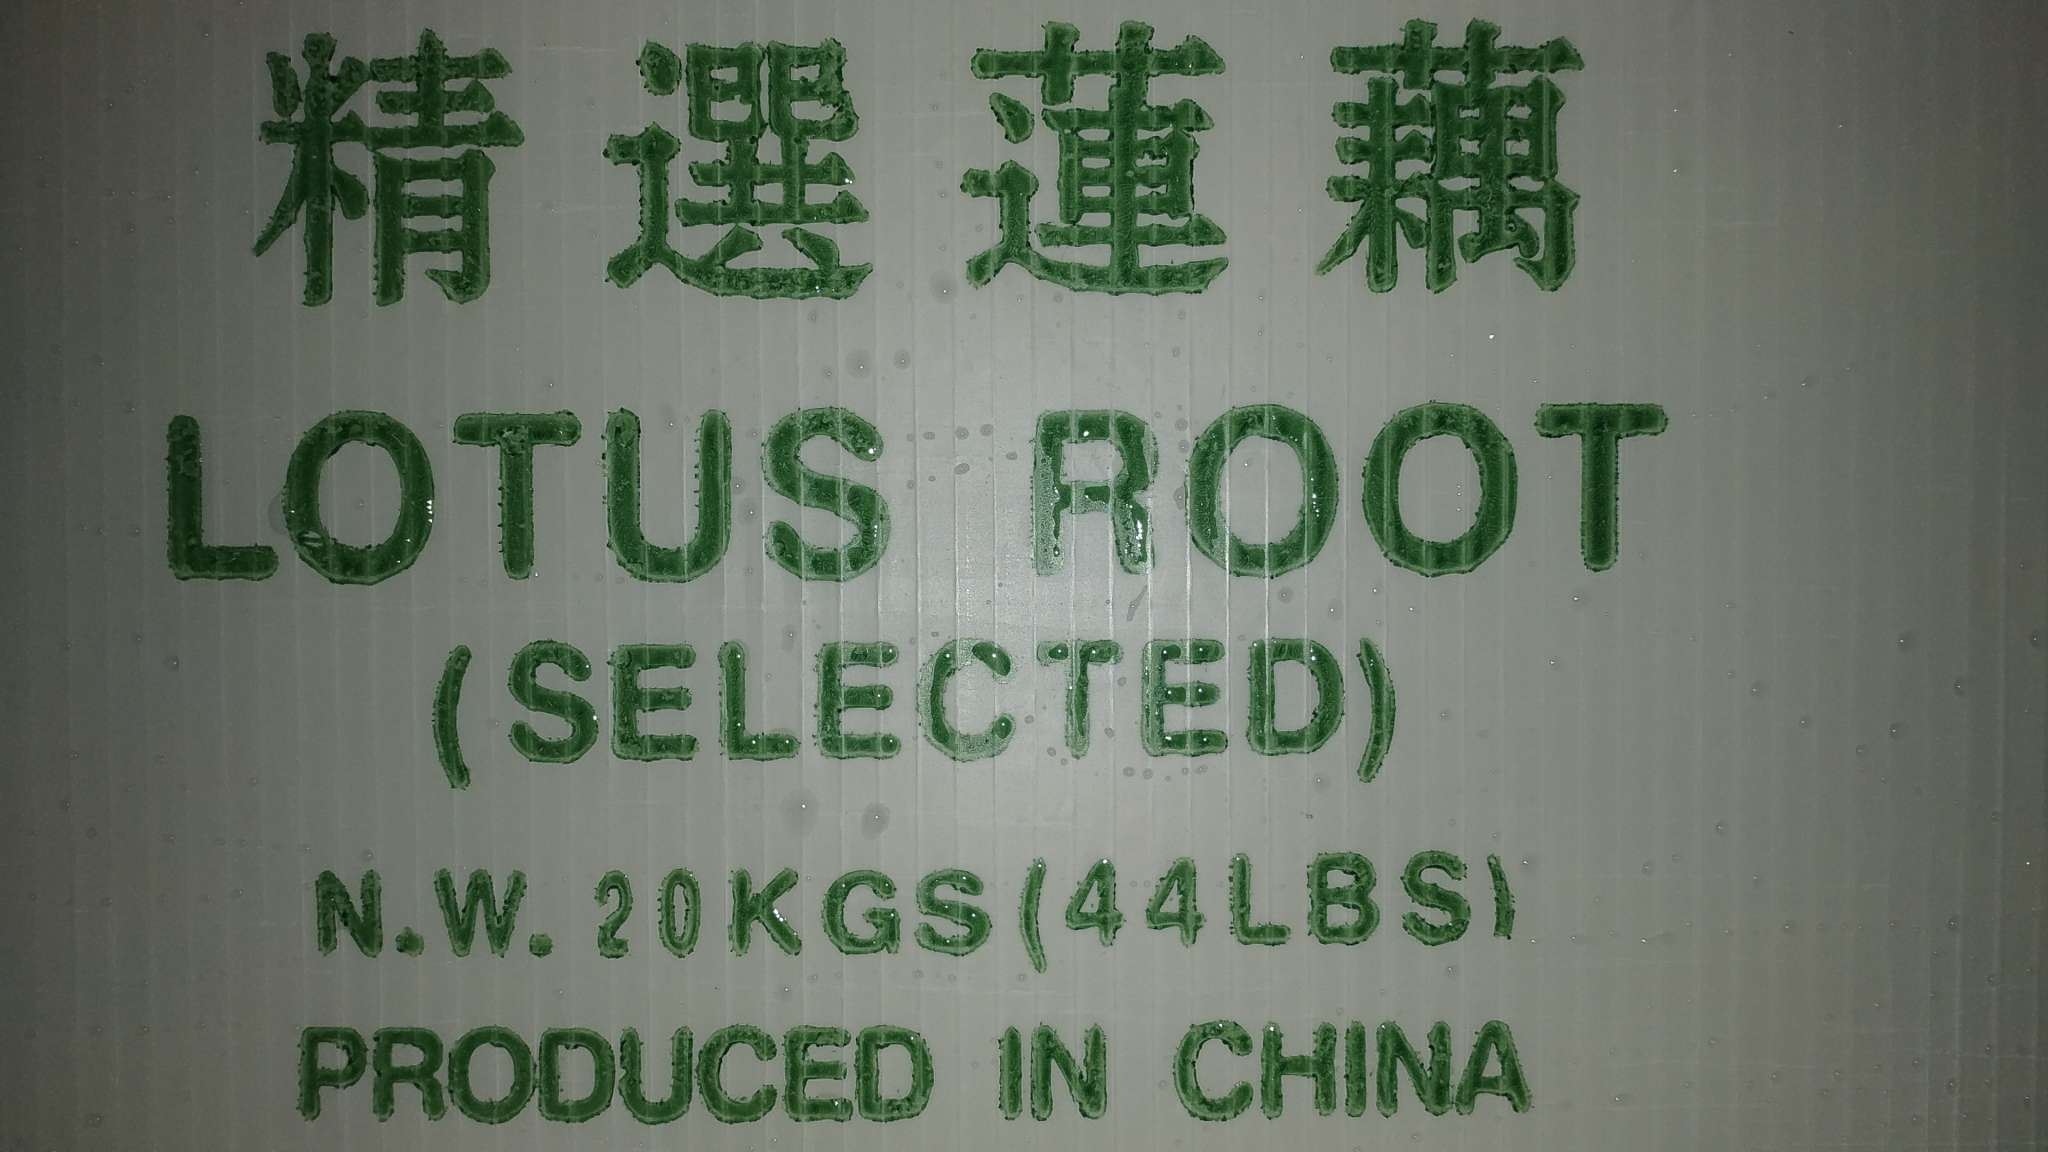 洗水莲藕(Lotus root)